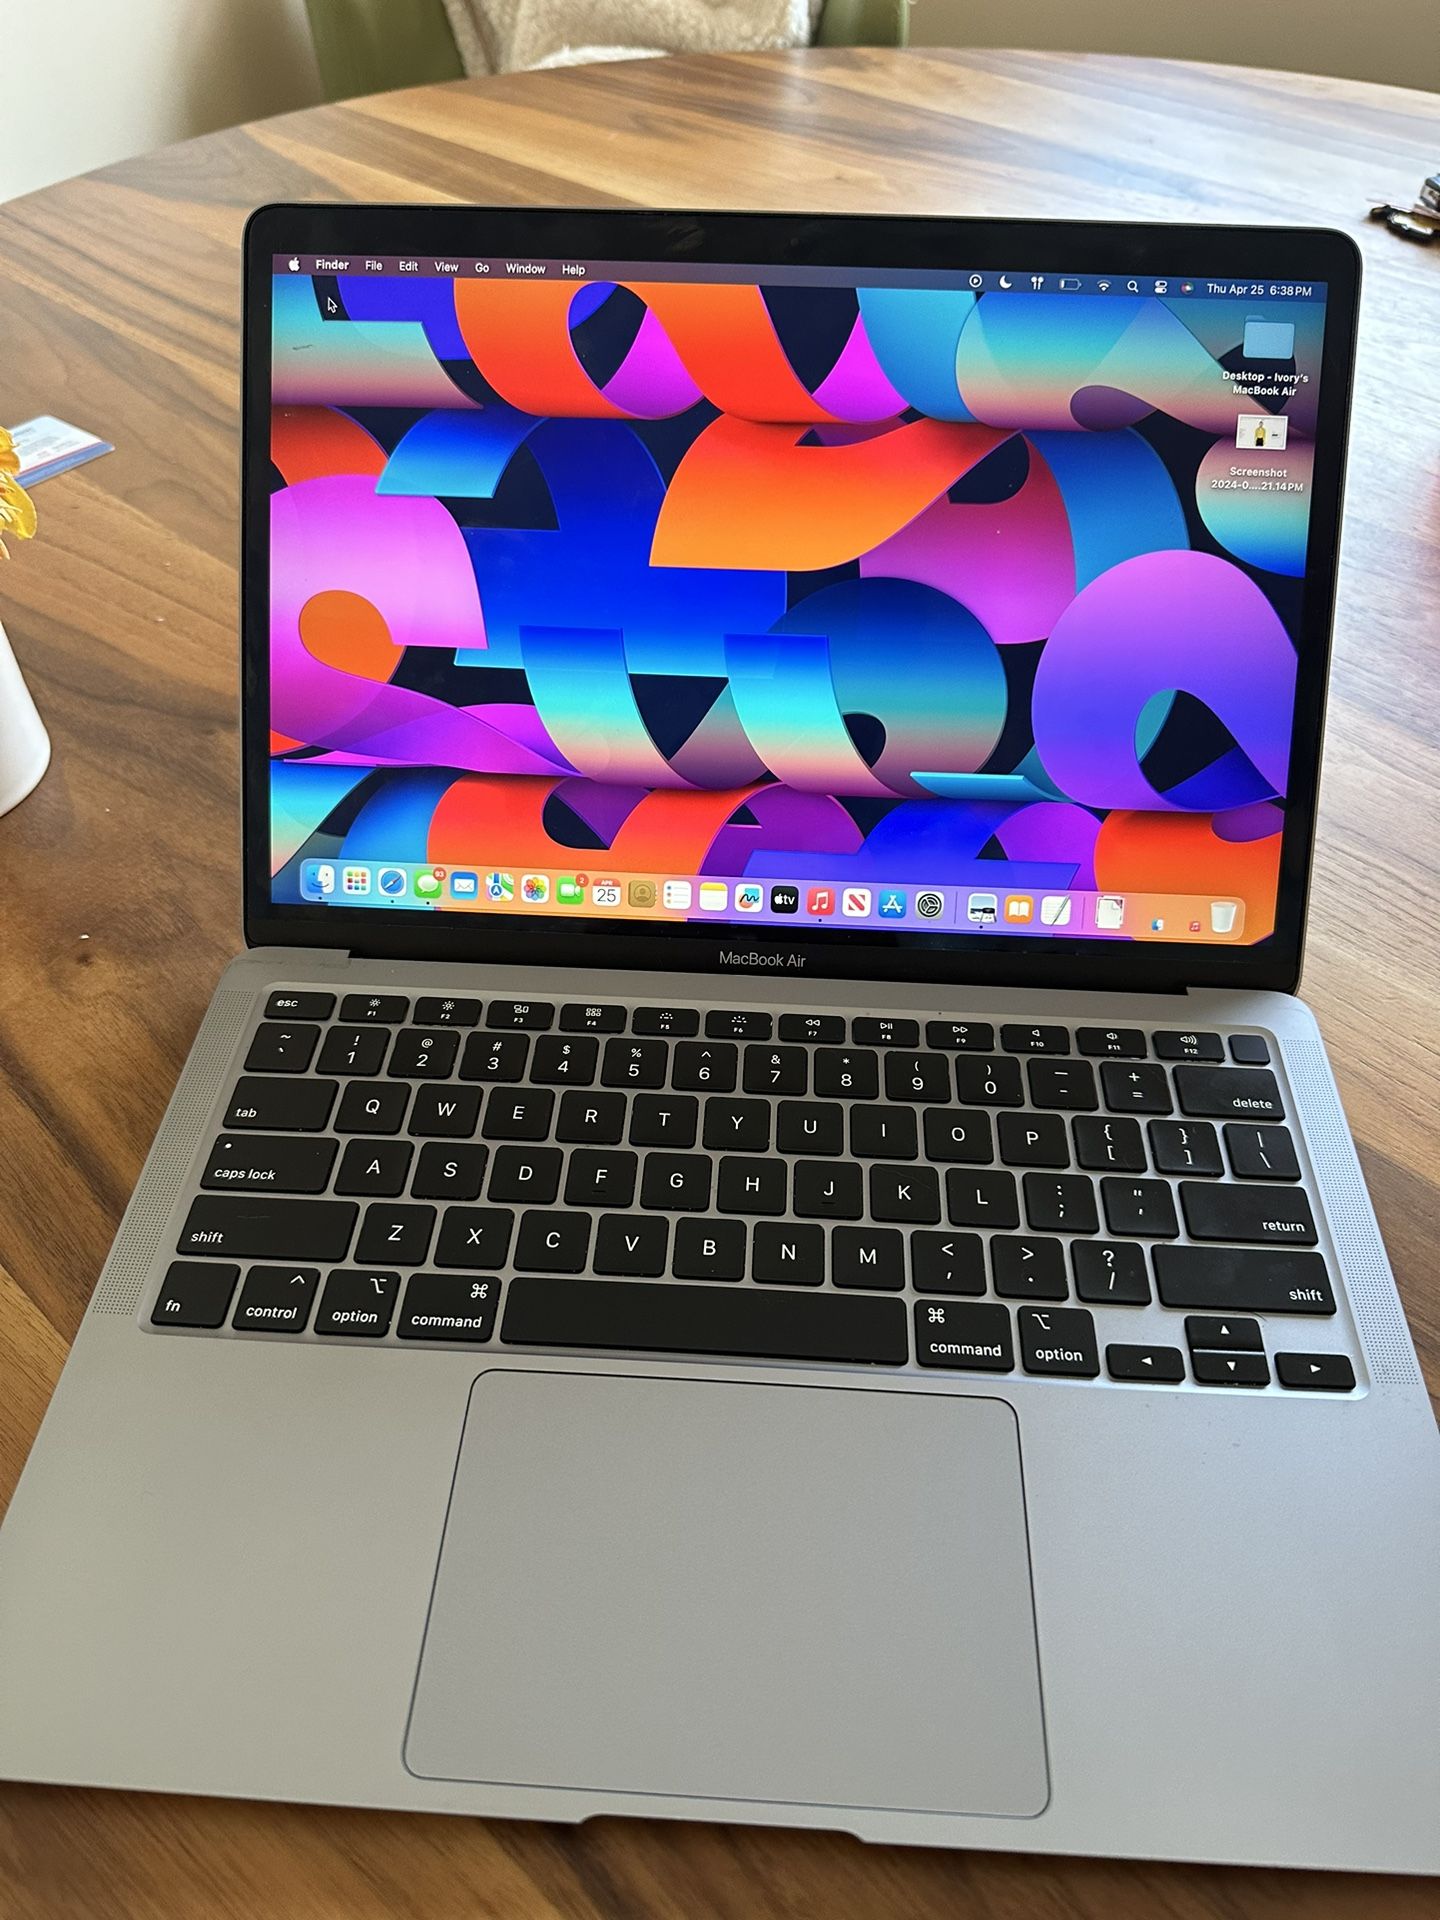 MacBook Air- Space Grey